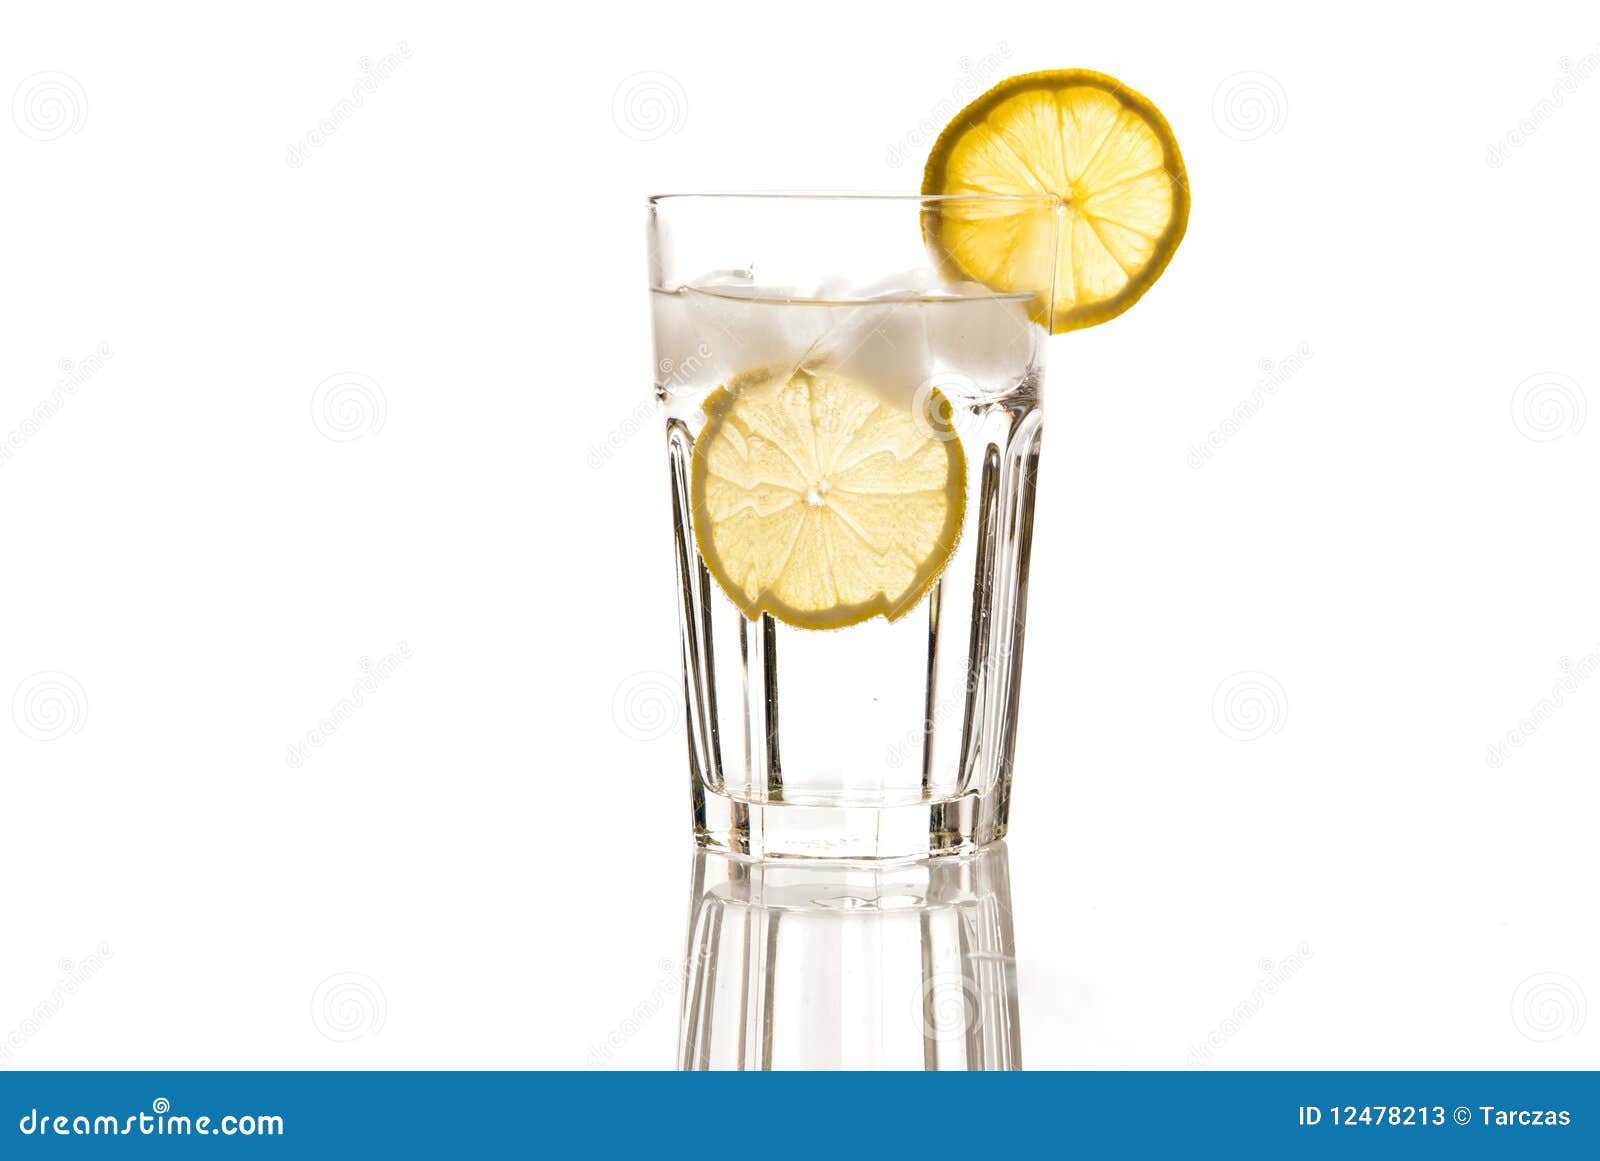 2 Gläser Miniralwasser mit Zitronenscheiben  *~* *~ 